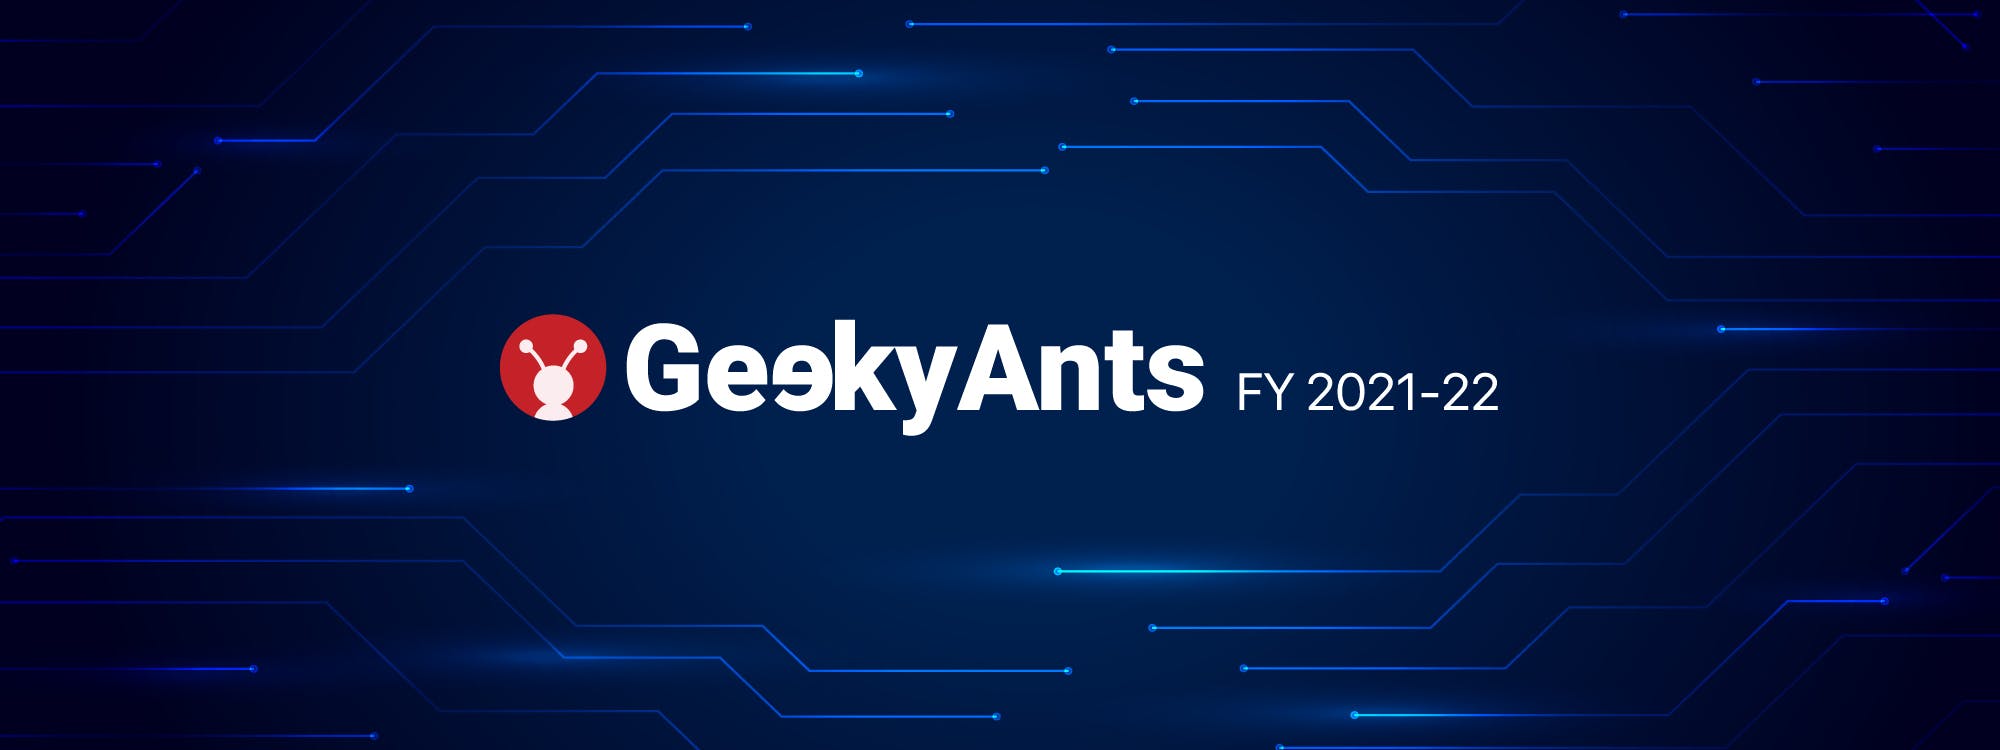 GeekyAnts In 2022: Empowering Everyone To Build Things